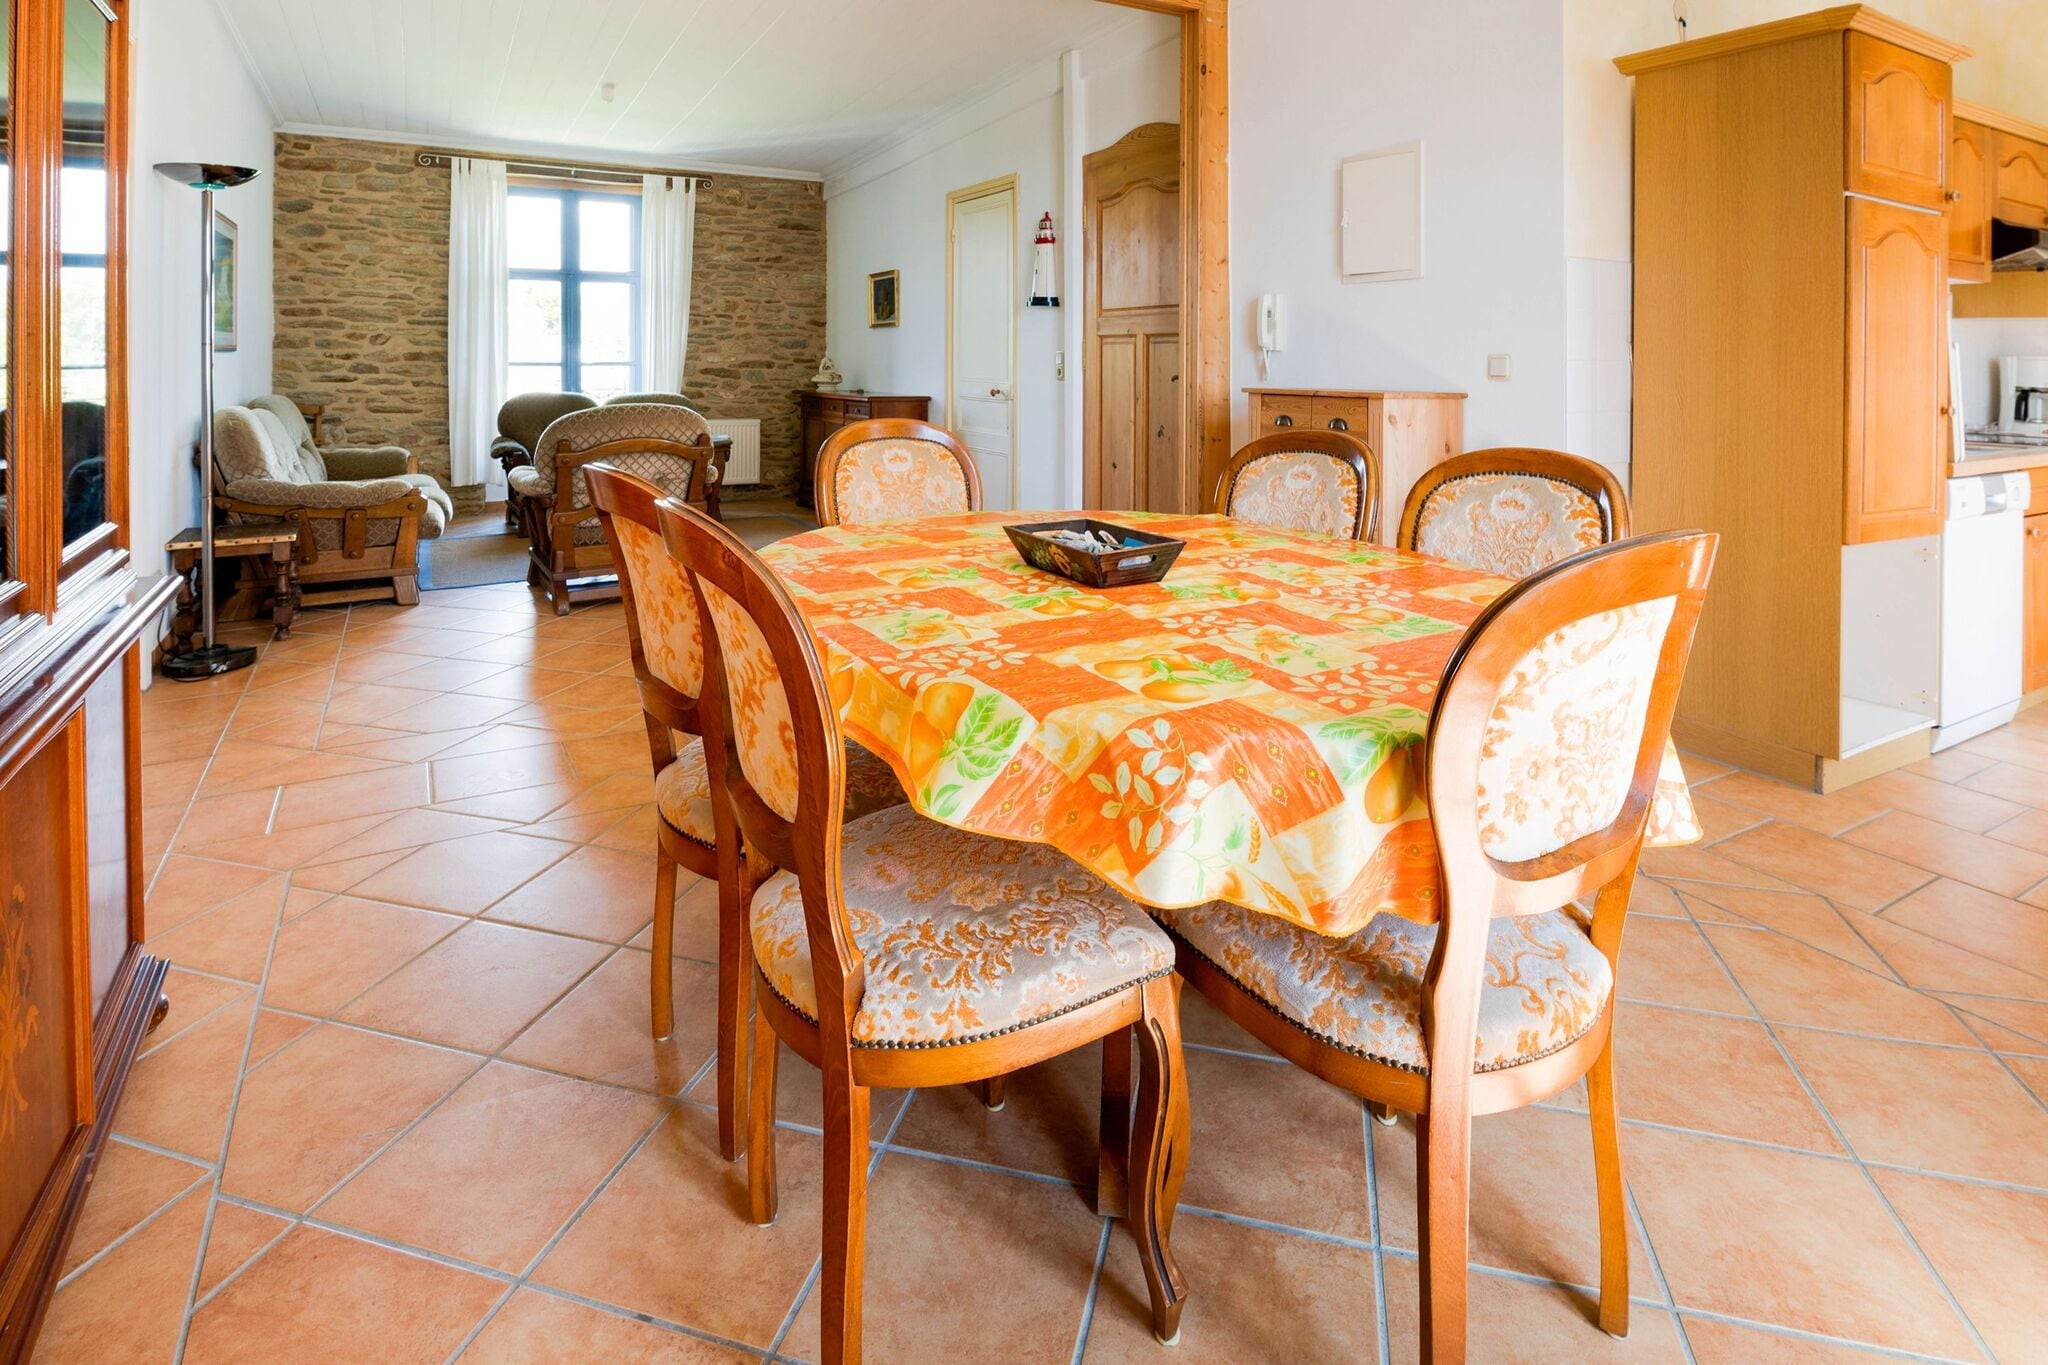 Appartement op ongeveer 100 meter van de Atlantische oceaan in het zuiden van Bretagne.